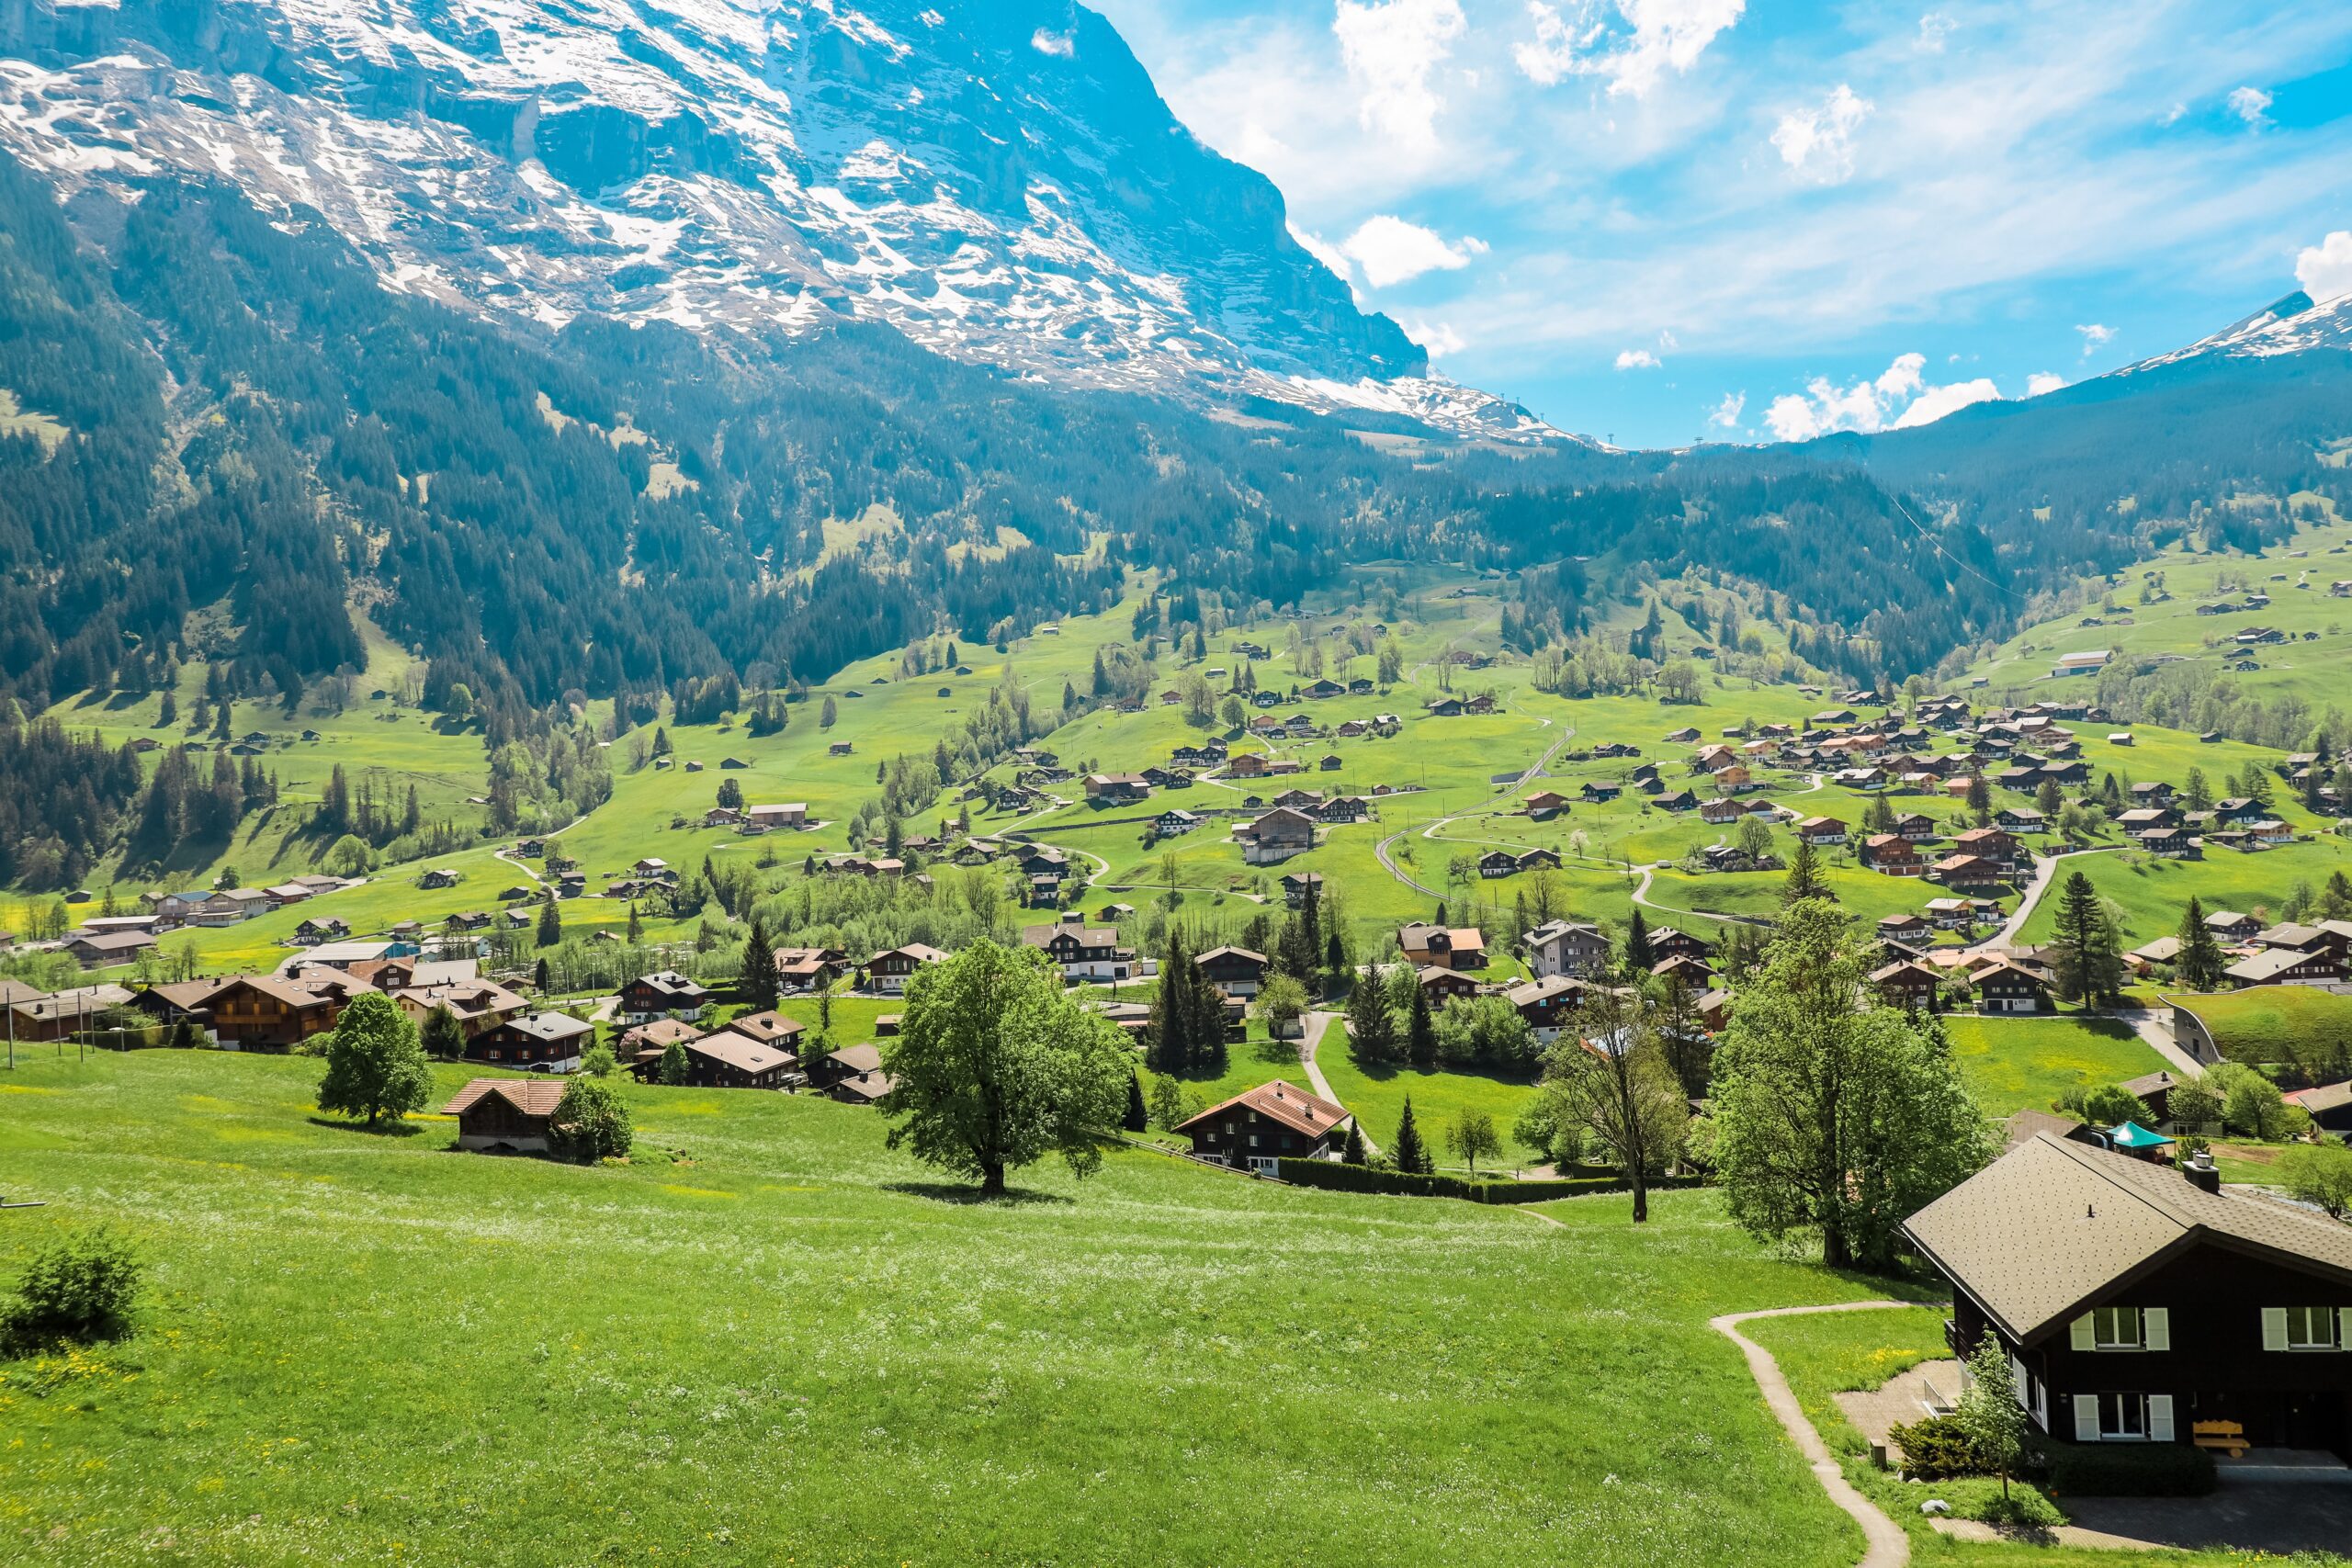 Grindelwald vs Interlaken: Which is better?